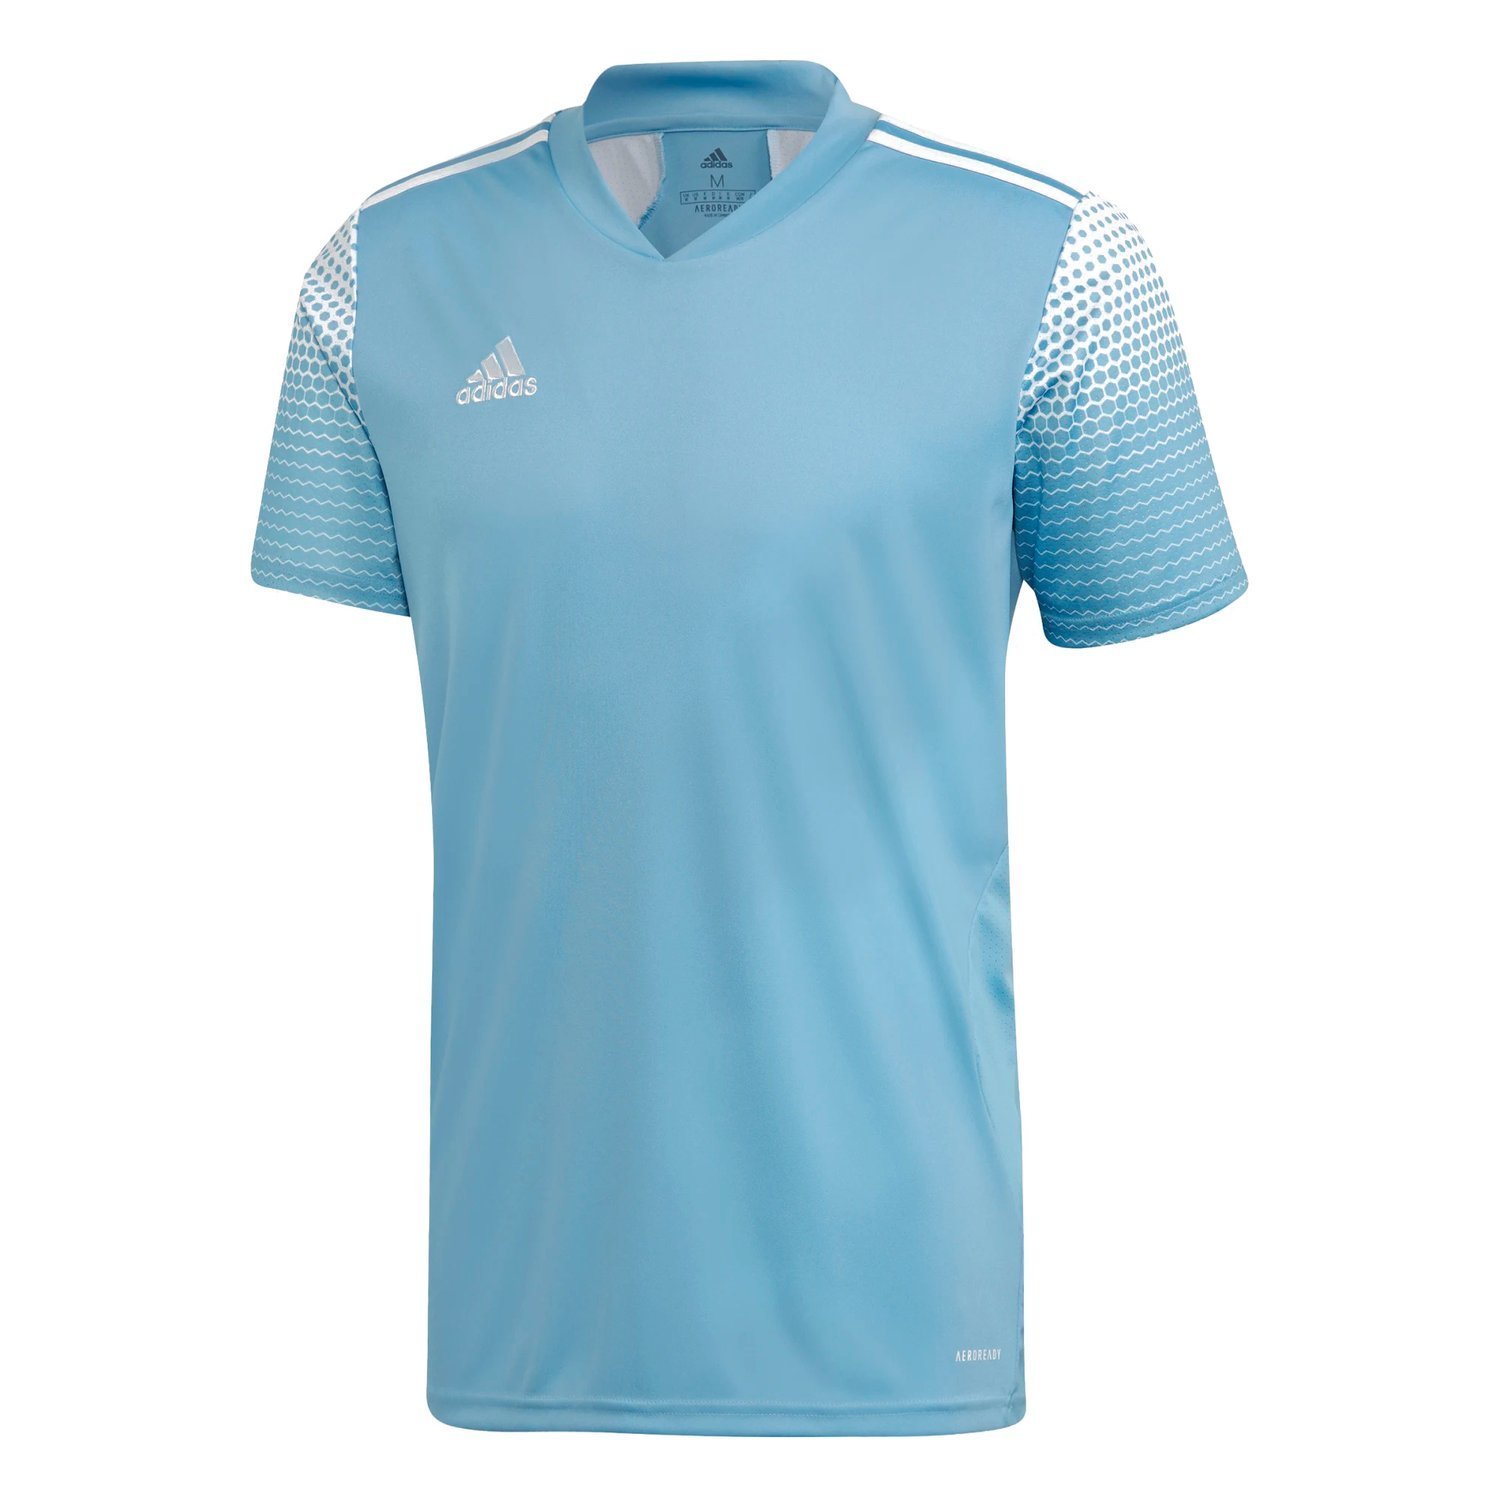 koszulka ADIDAS 20 FI4560 - Koszulki meczowe - Odzież piłkarska - Odzież - Vitasport